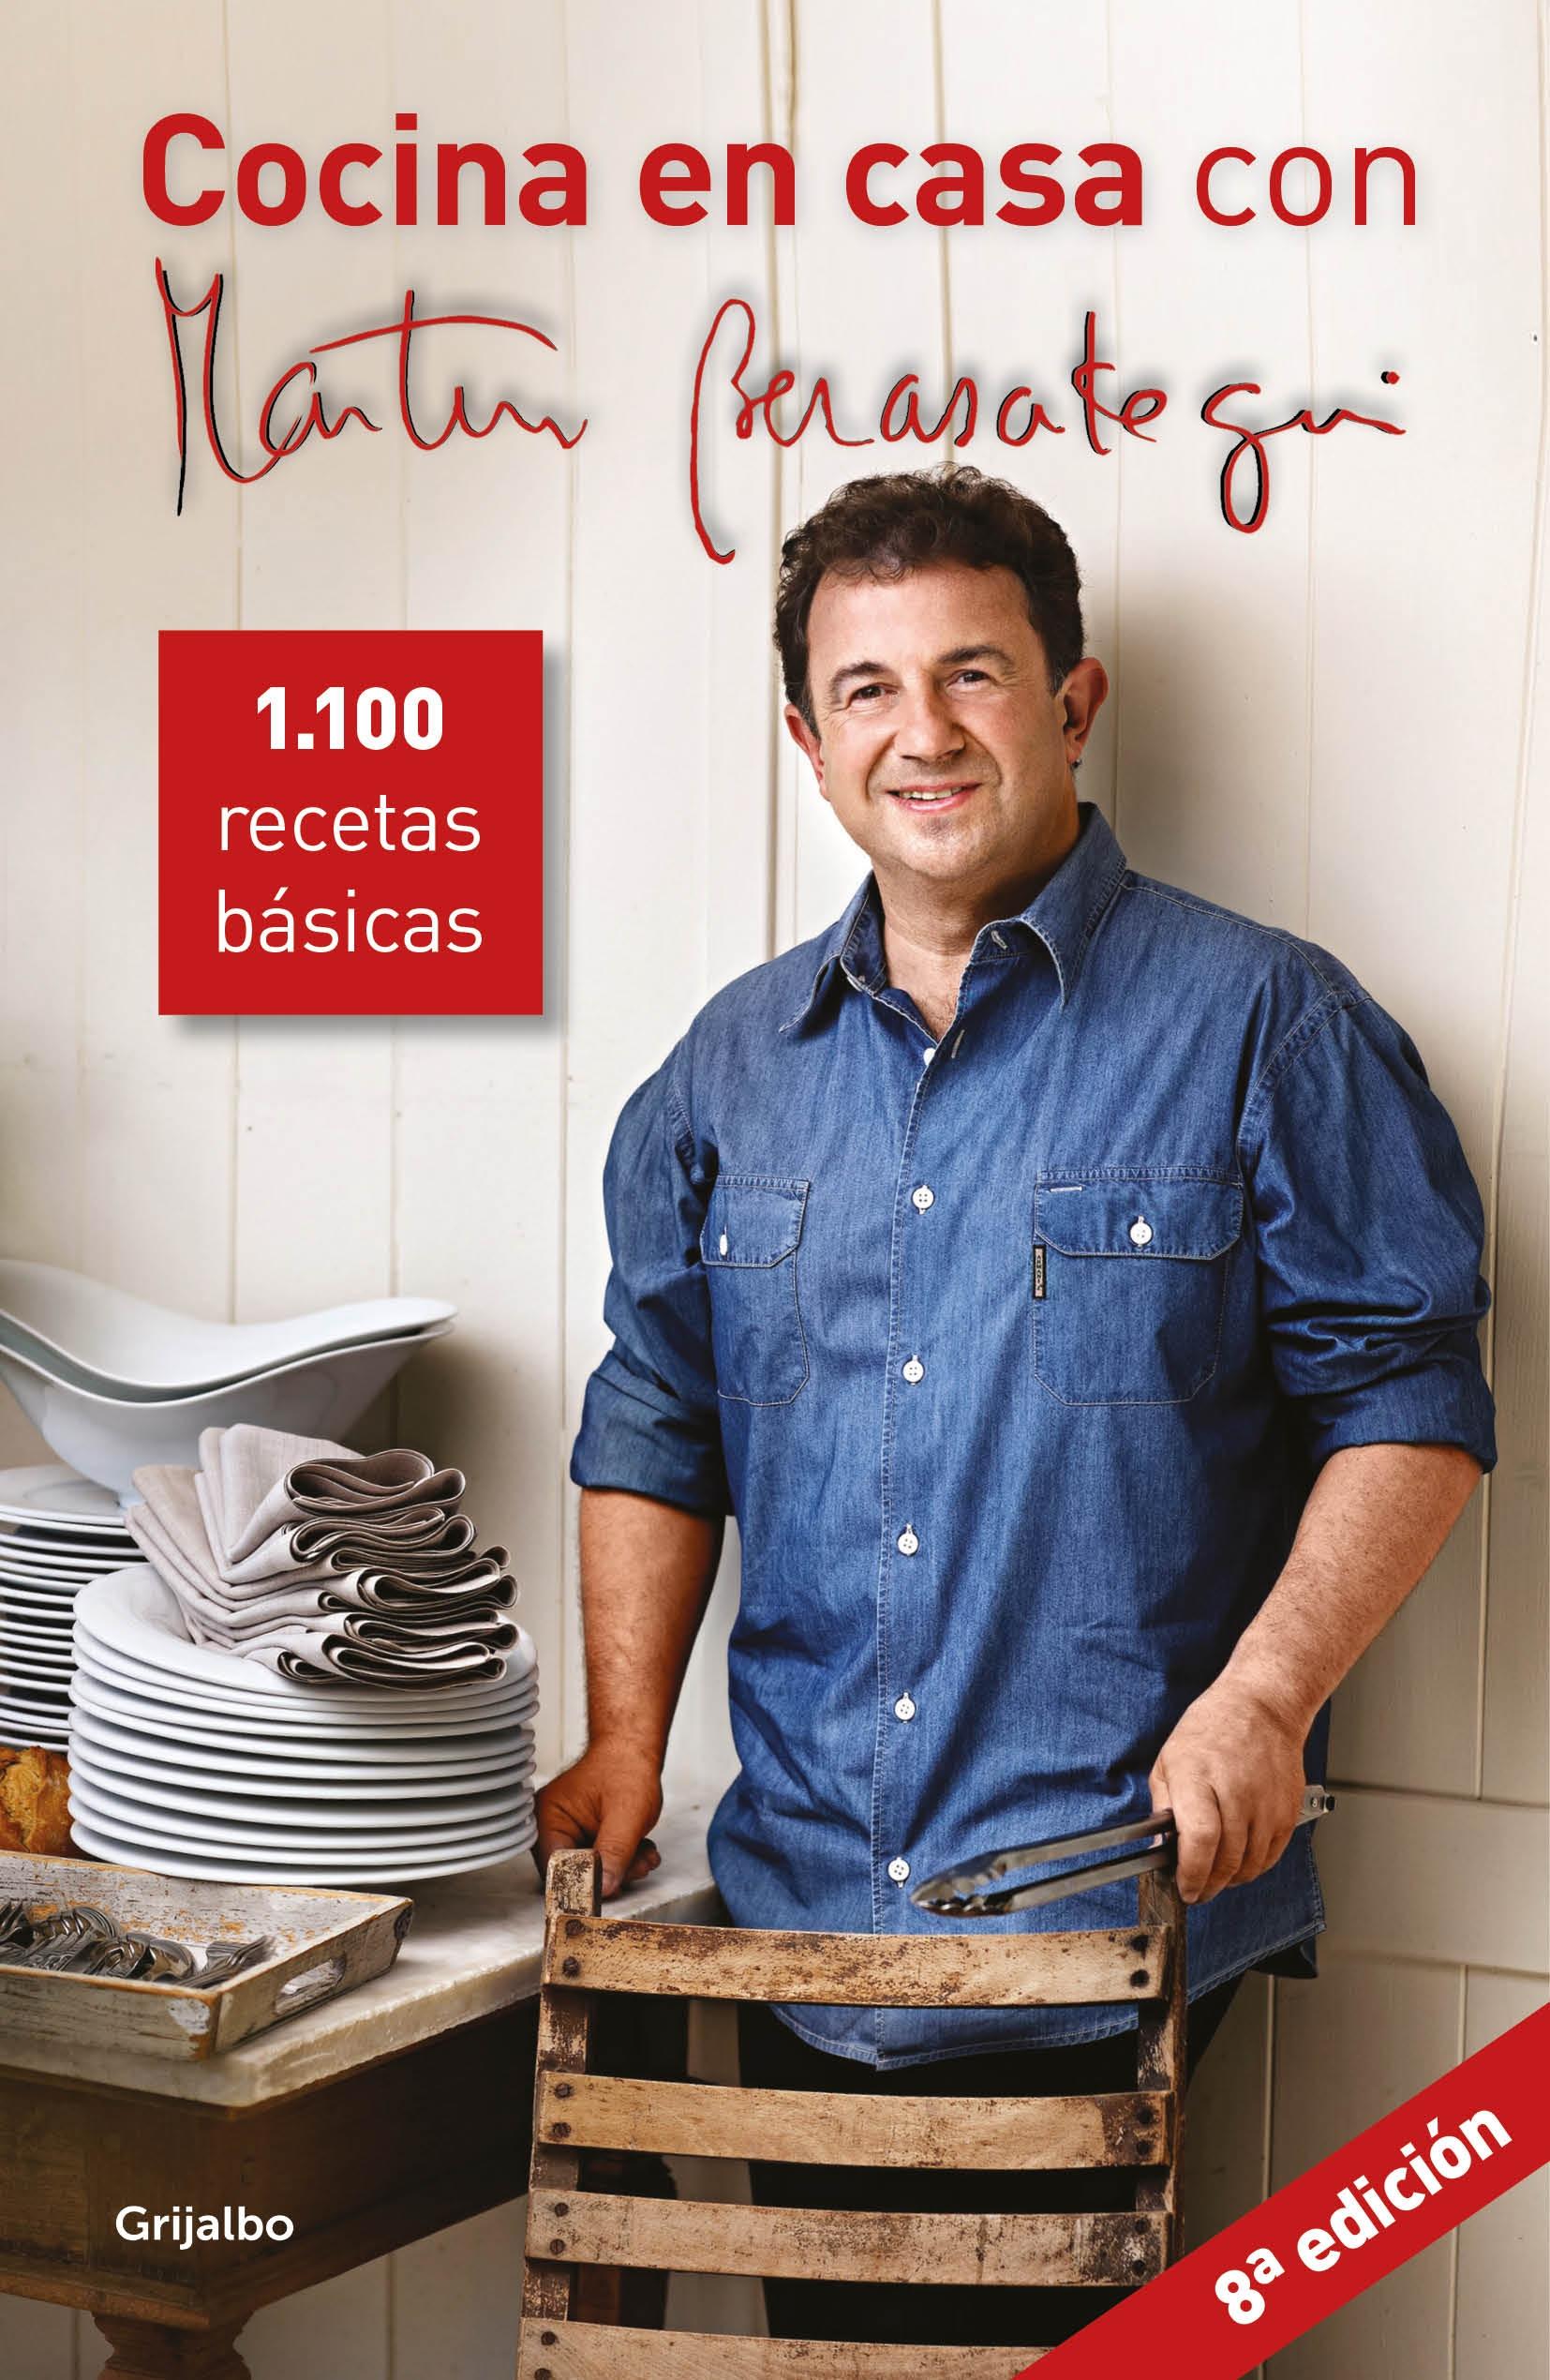 Cocina en casa con Martín Berasategui "1100 recetas básicas". 